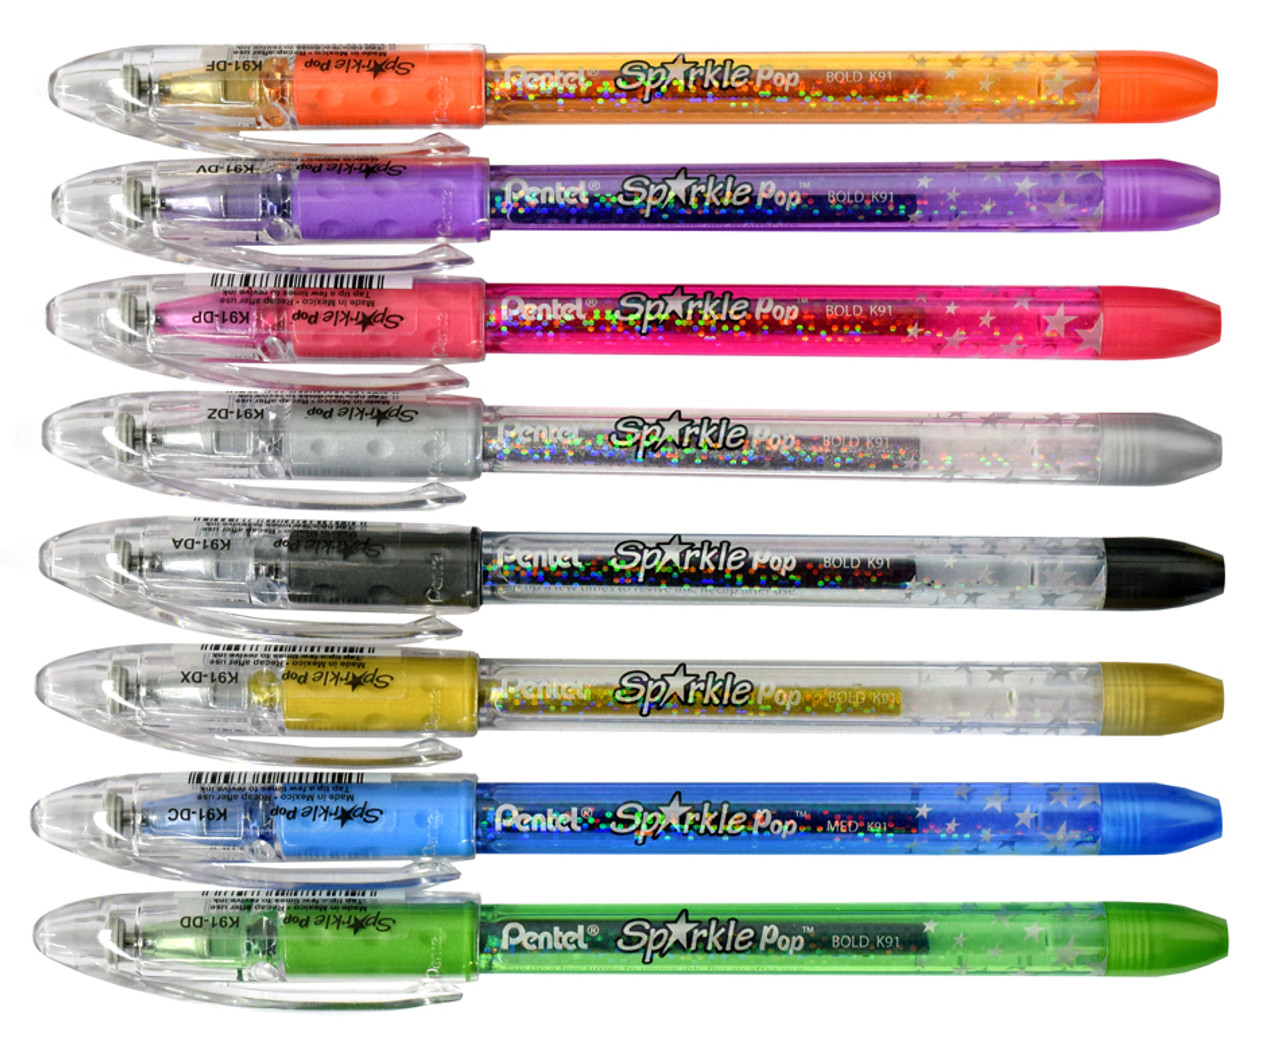 Silver Shimmer Glitter Pen - pens